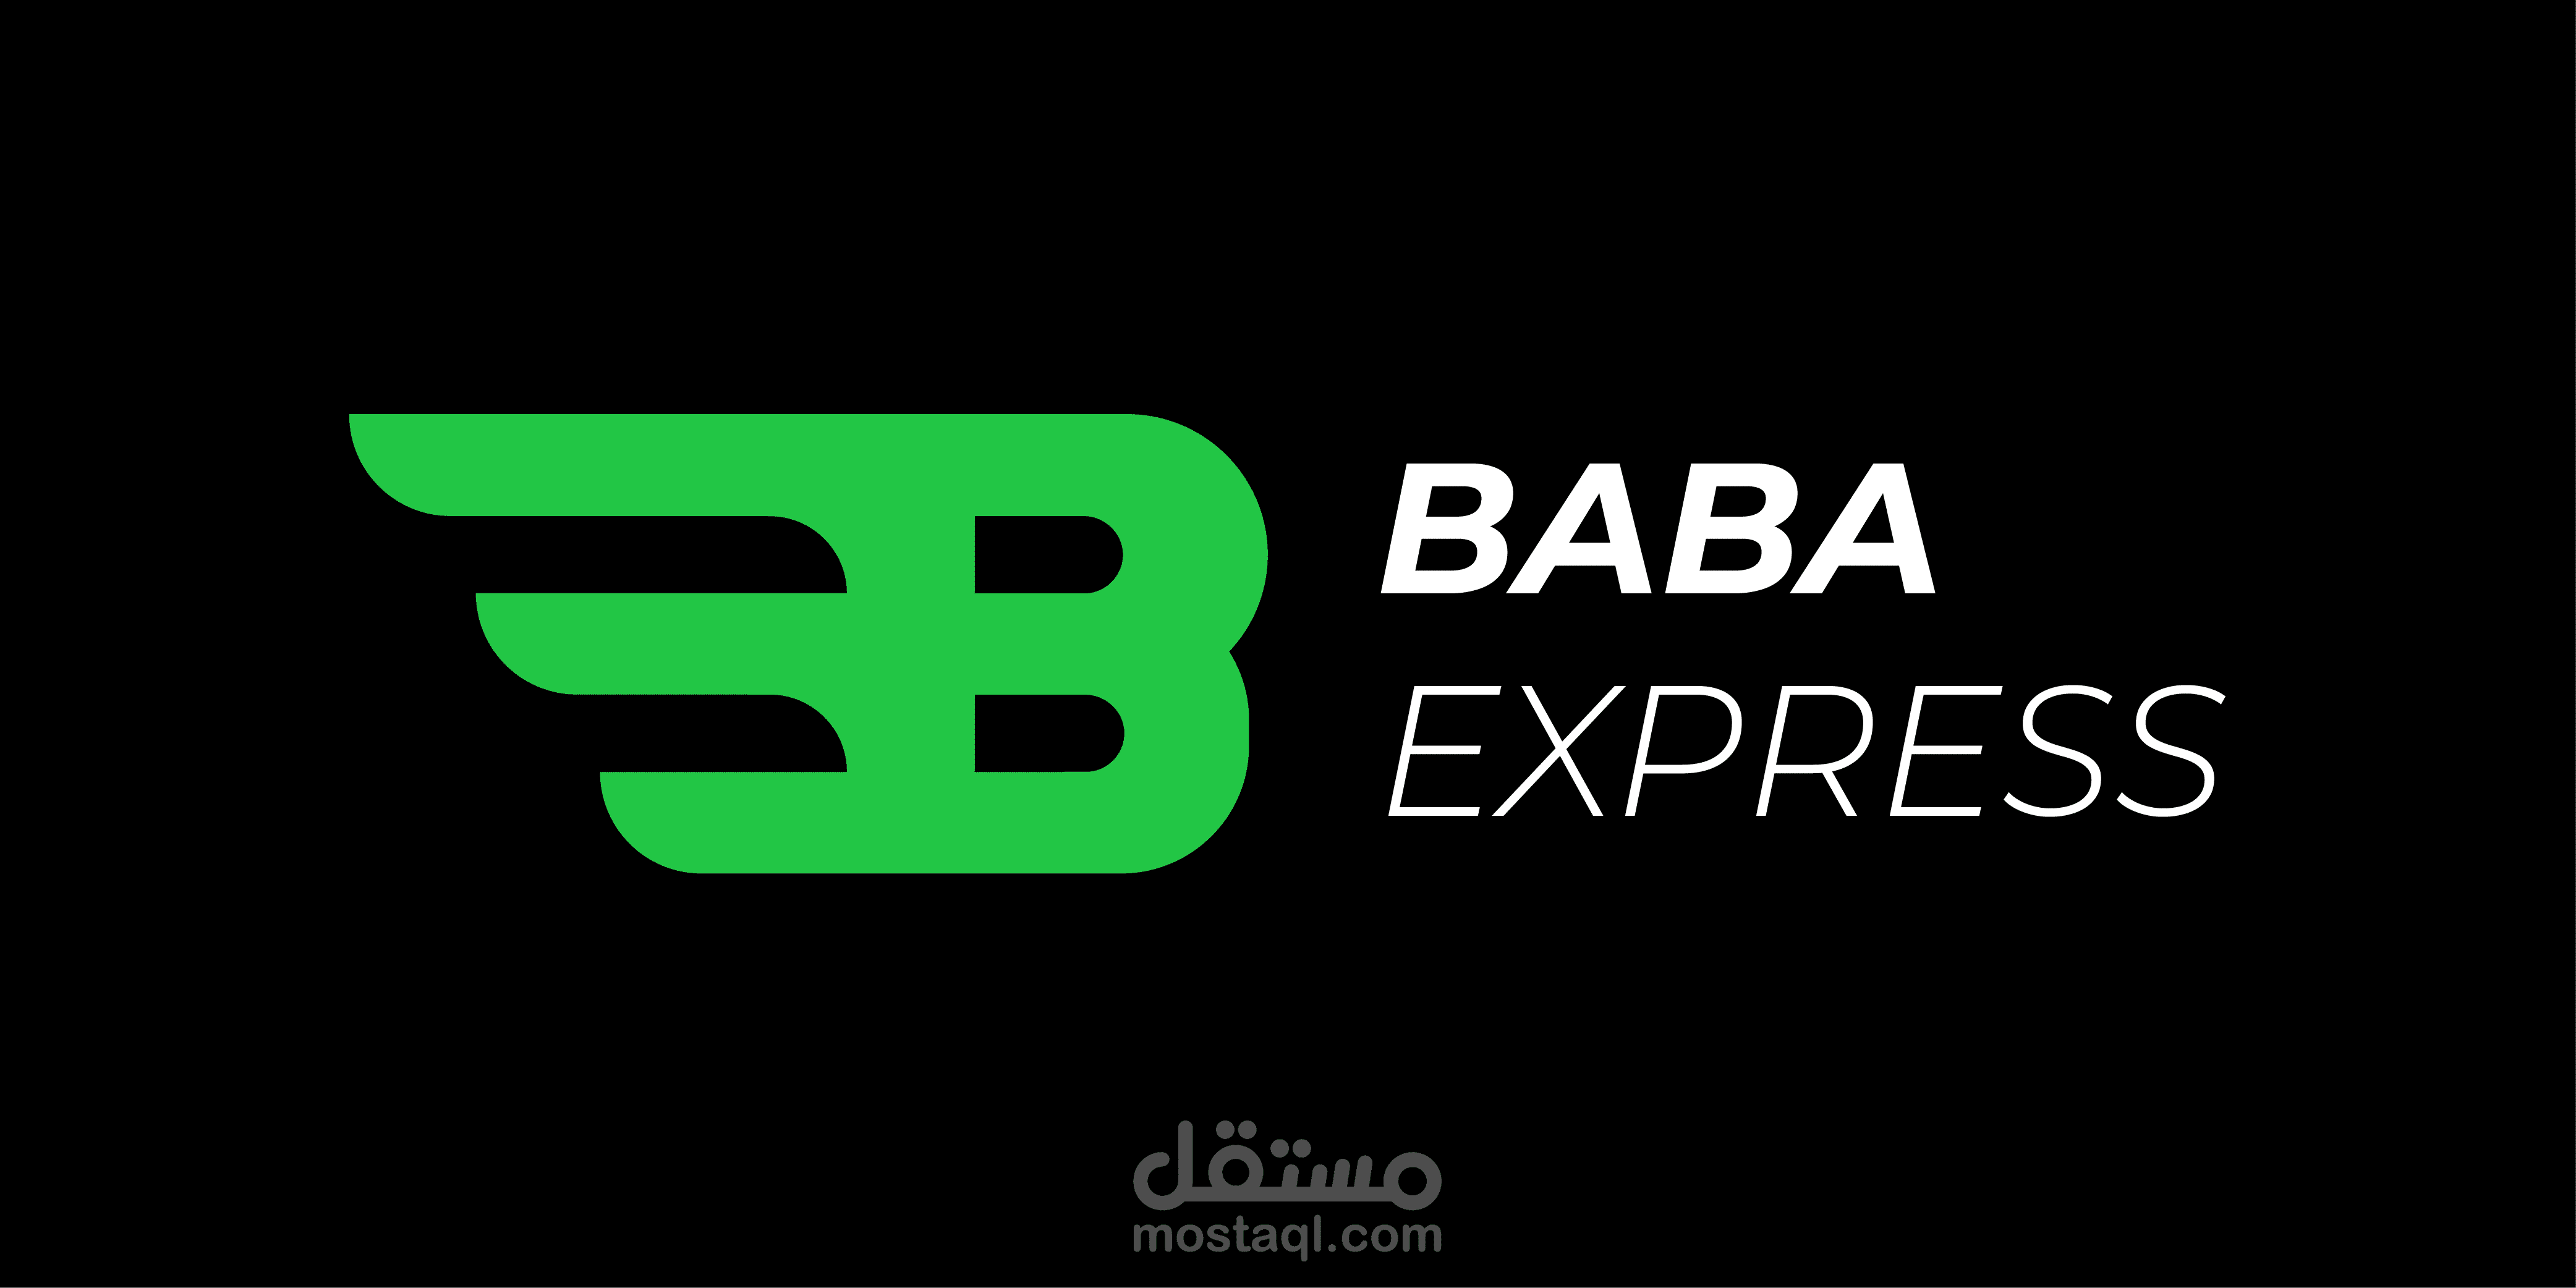 Baba express branding | مستقل